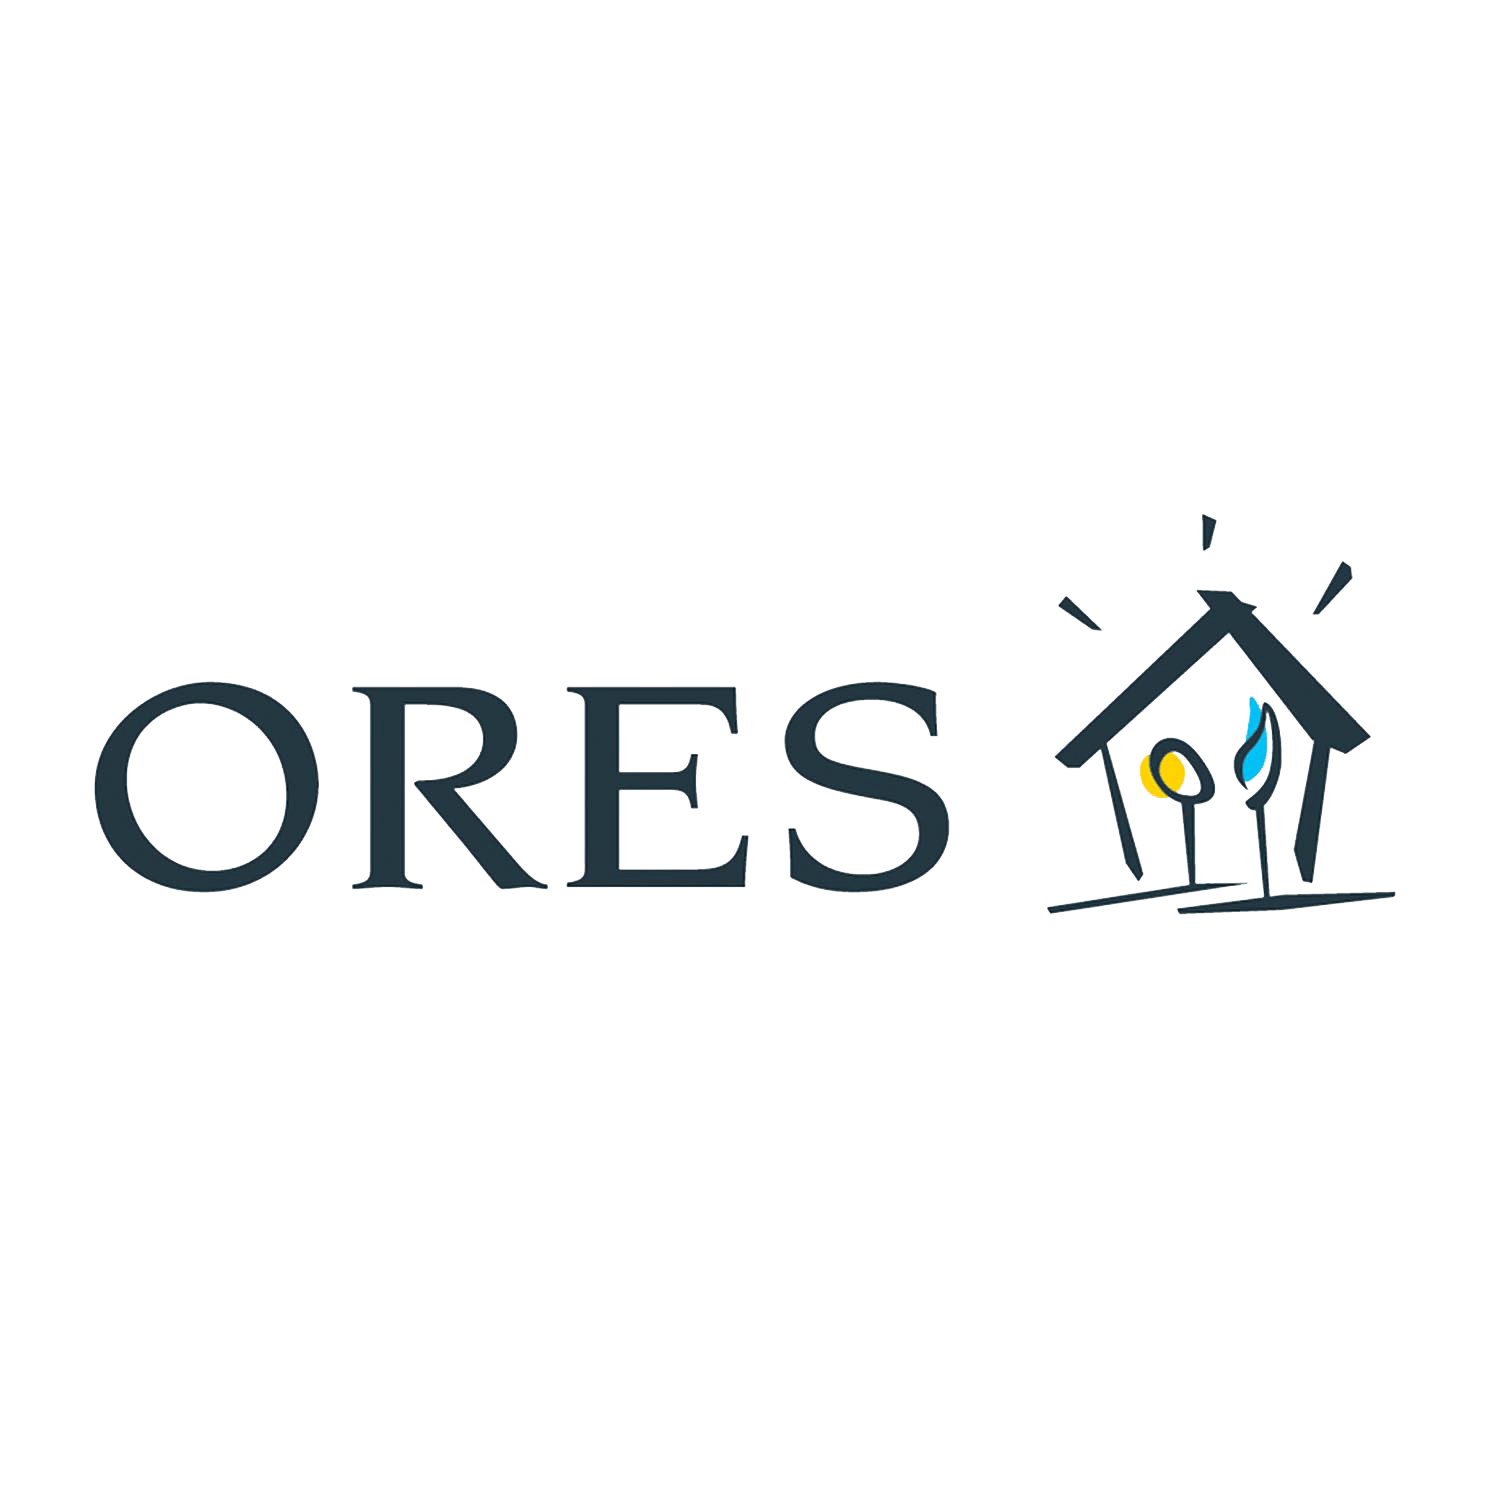 Logo Ores